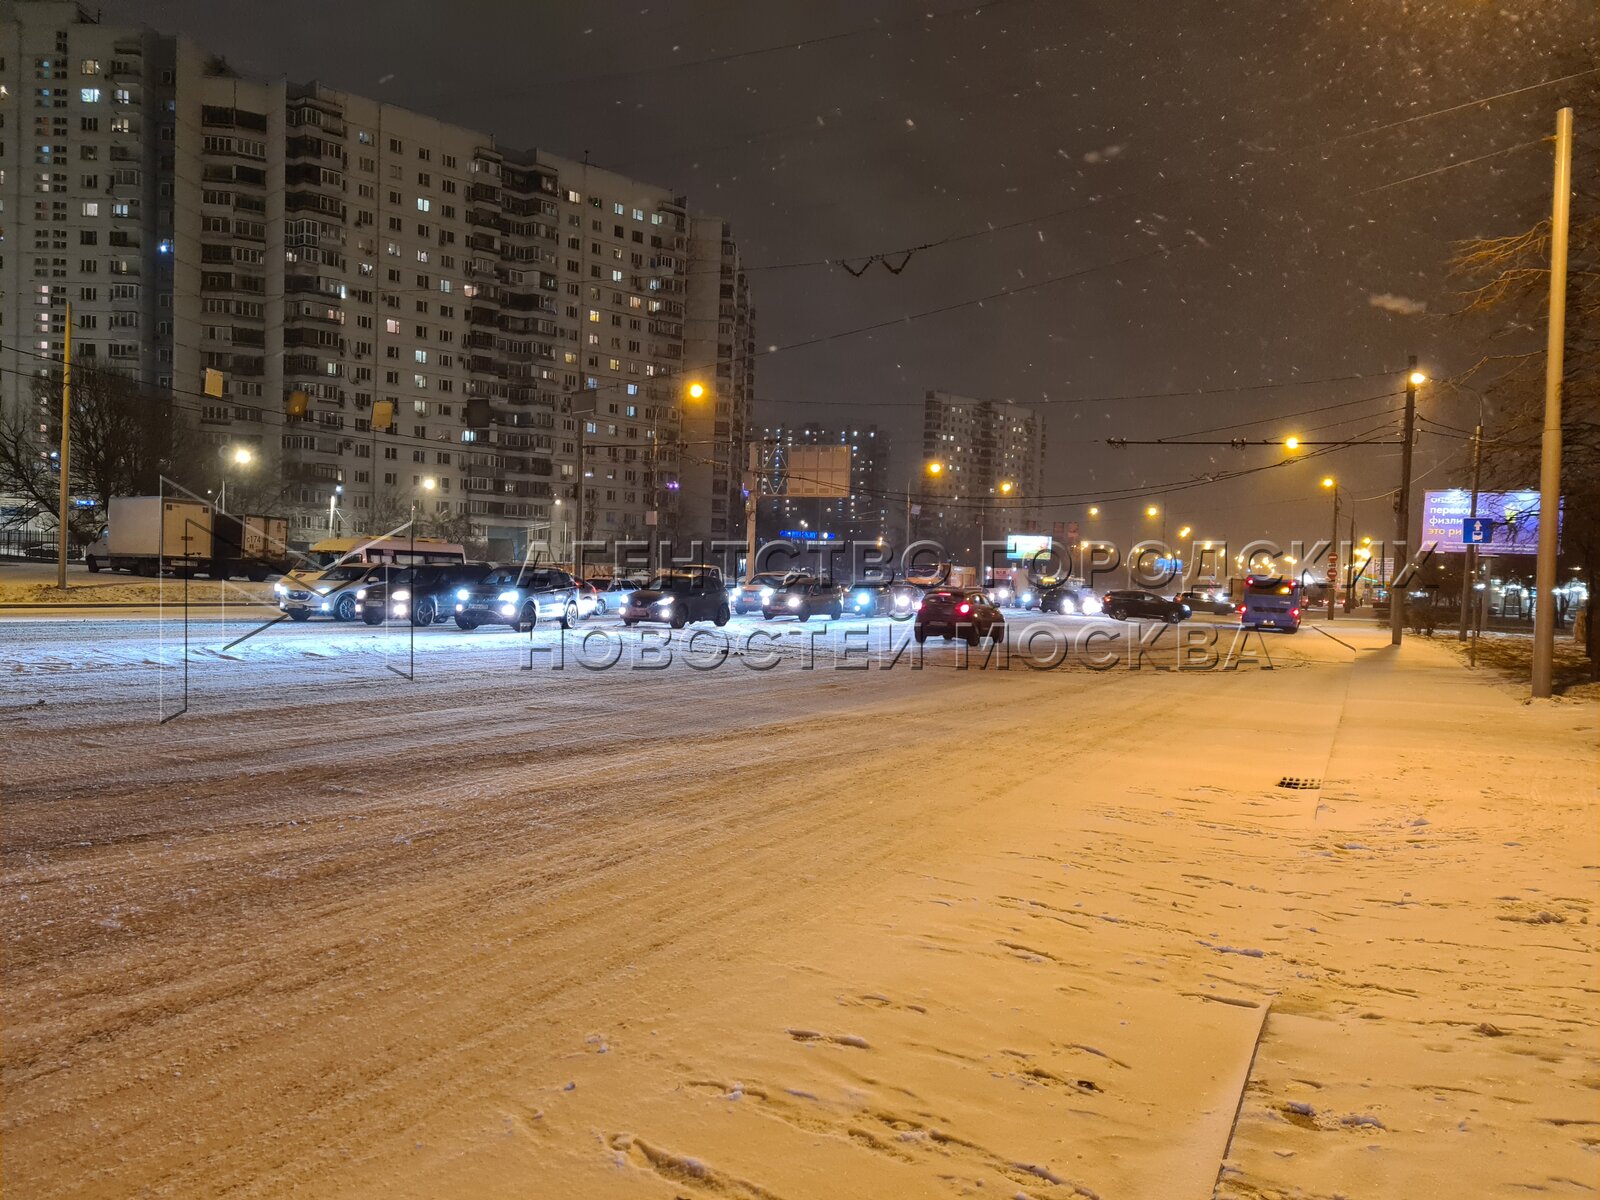 Погода сейчас вечером. Снегопад в Москве. Снег в городе. Снегопад Москва вечер. Зимний снегопад в Москве вечером.